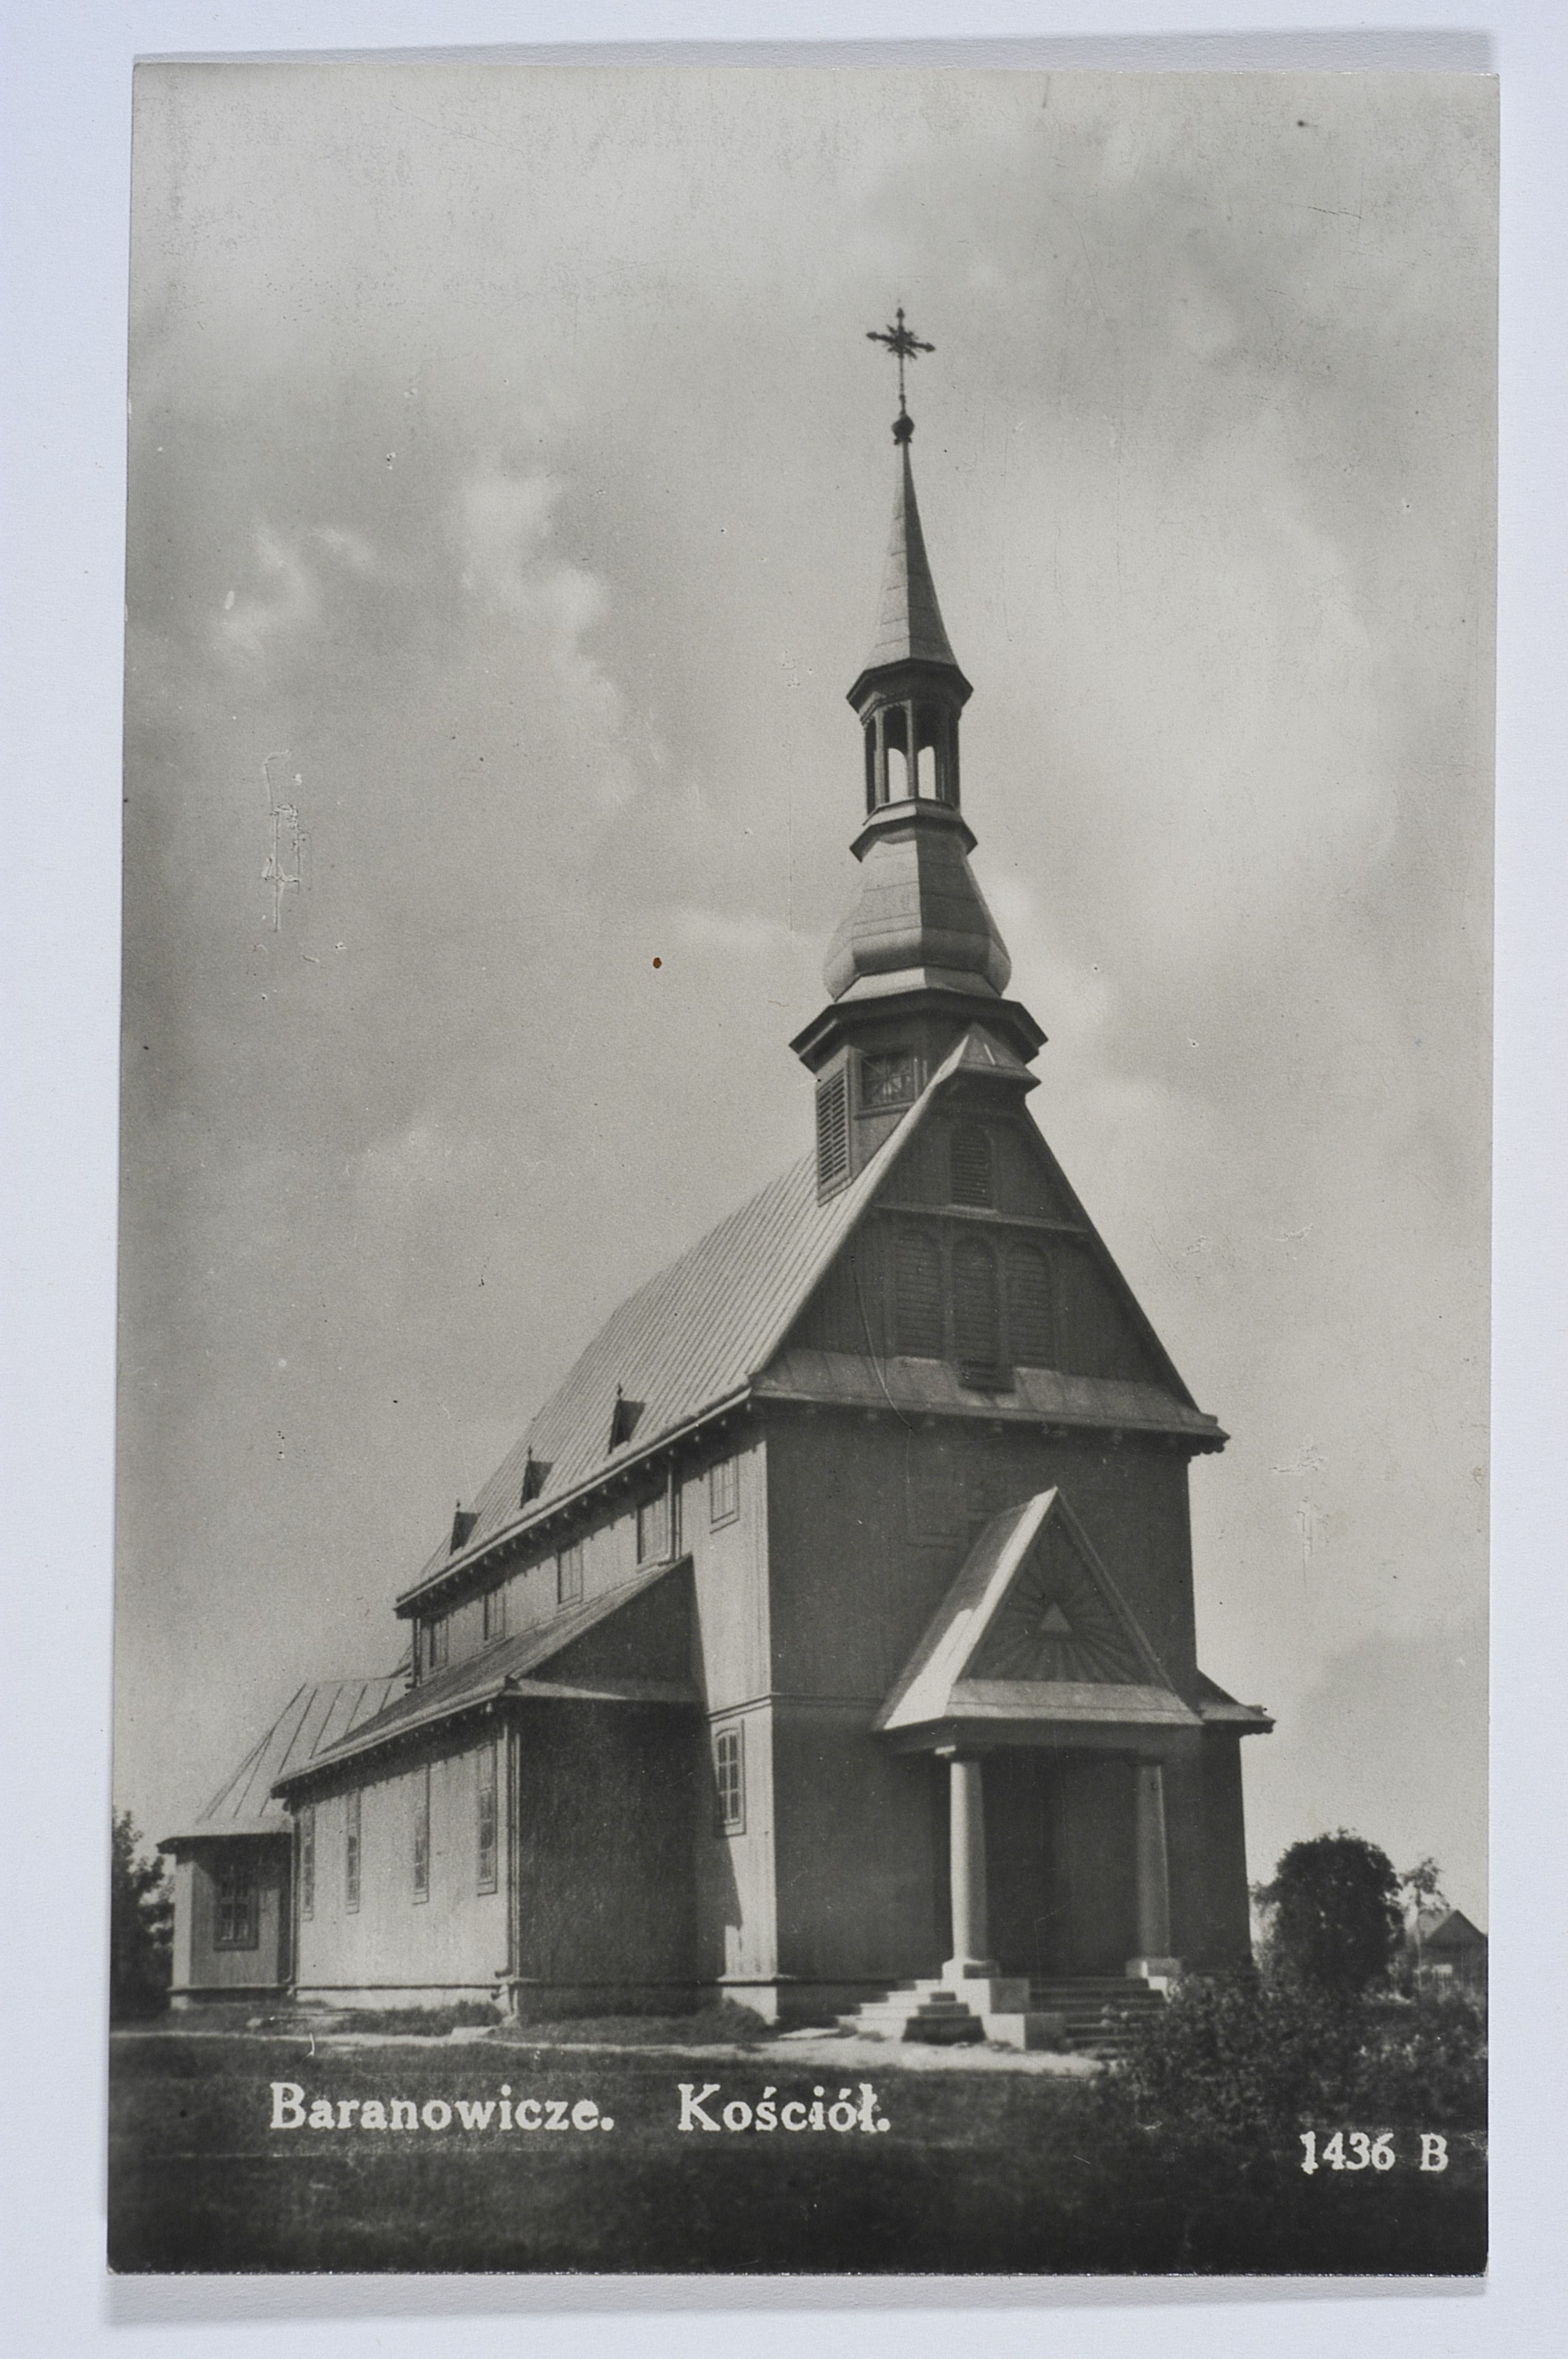 Church of the Elevation of the Holy Cross, 1925, designed by Tadeusz Żołądkowski, Baranowicze, Belarus